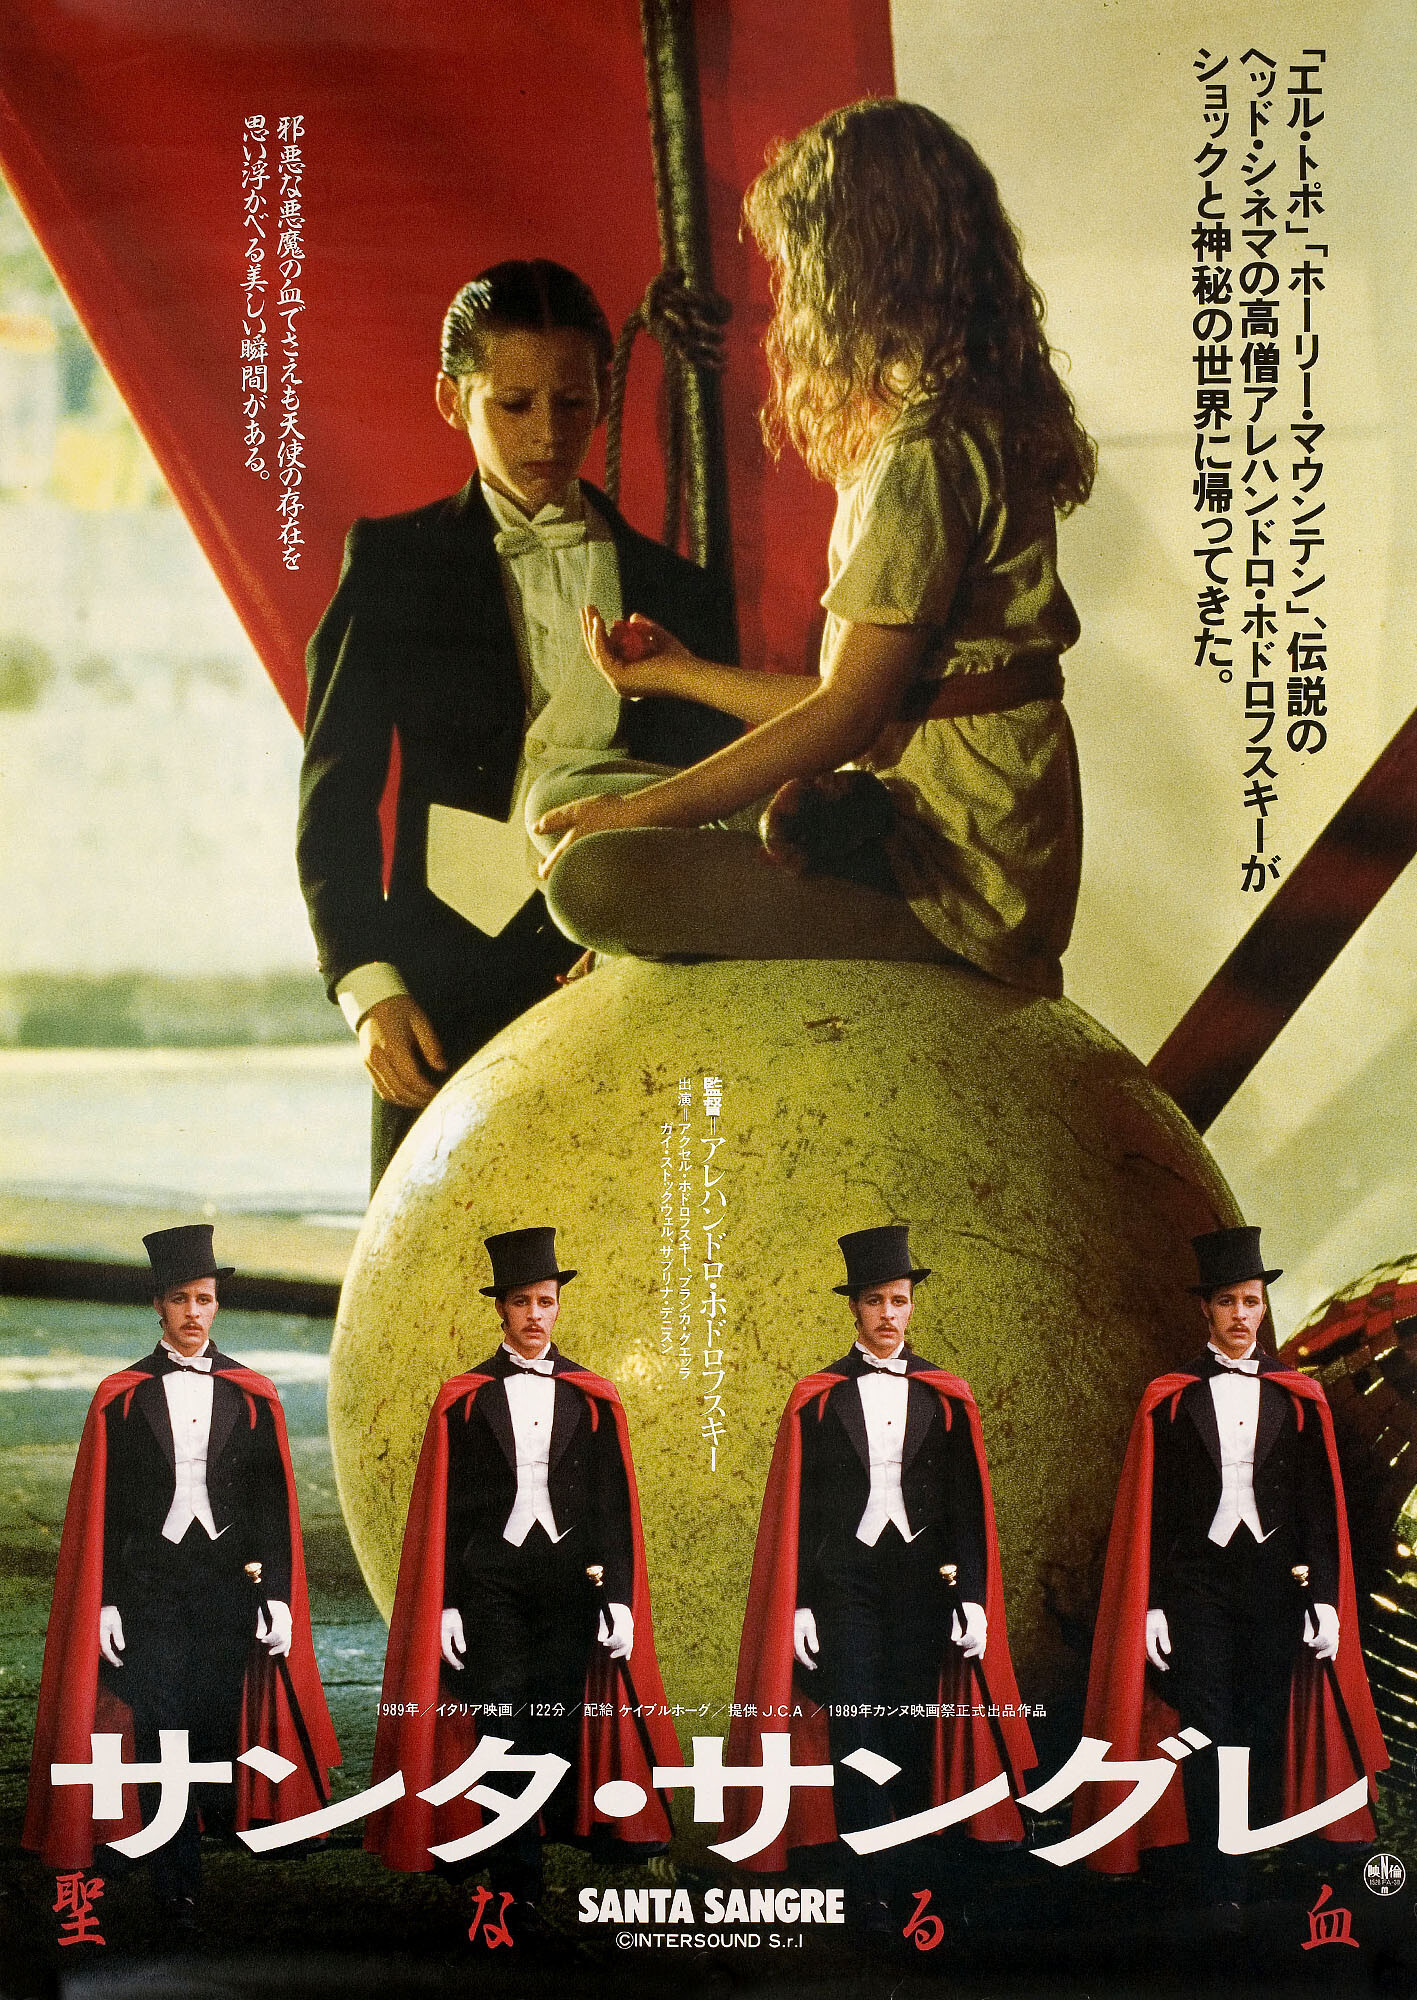 Святая кровь (Santa Sangre, 1989), режиссёр Алехандро Ходоровски, японский постер к фильму (ужасы, 1989 год)